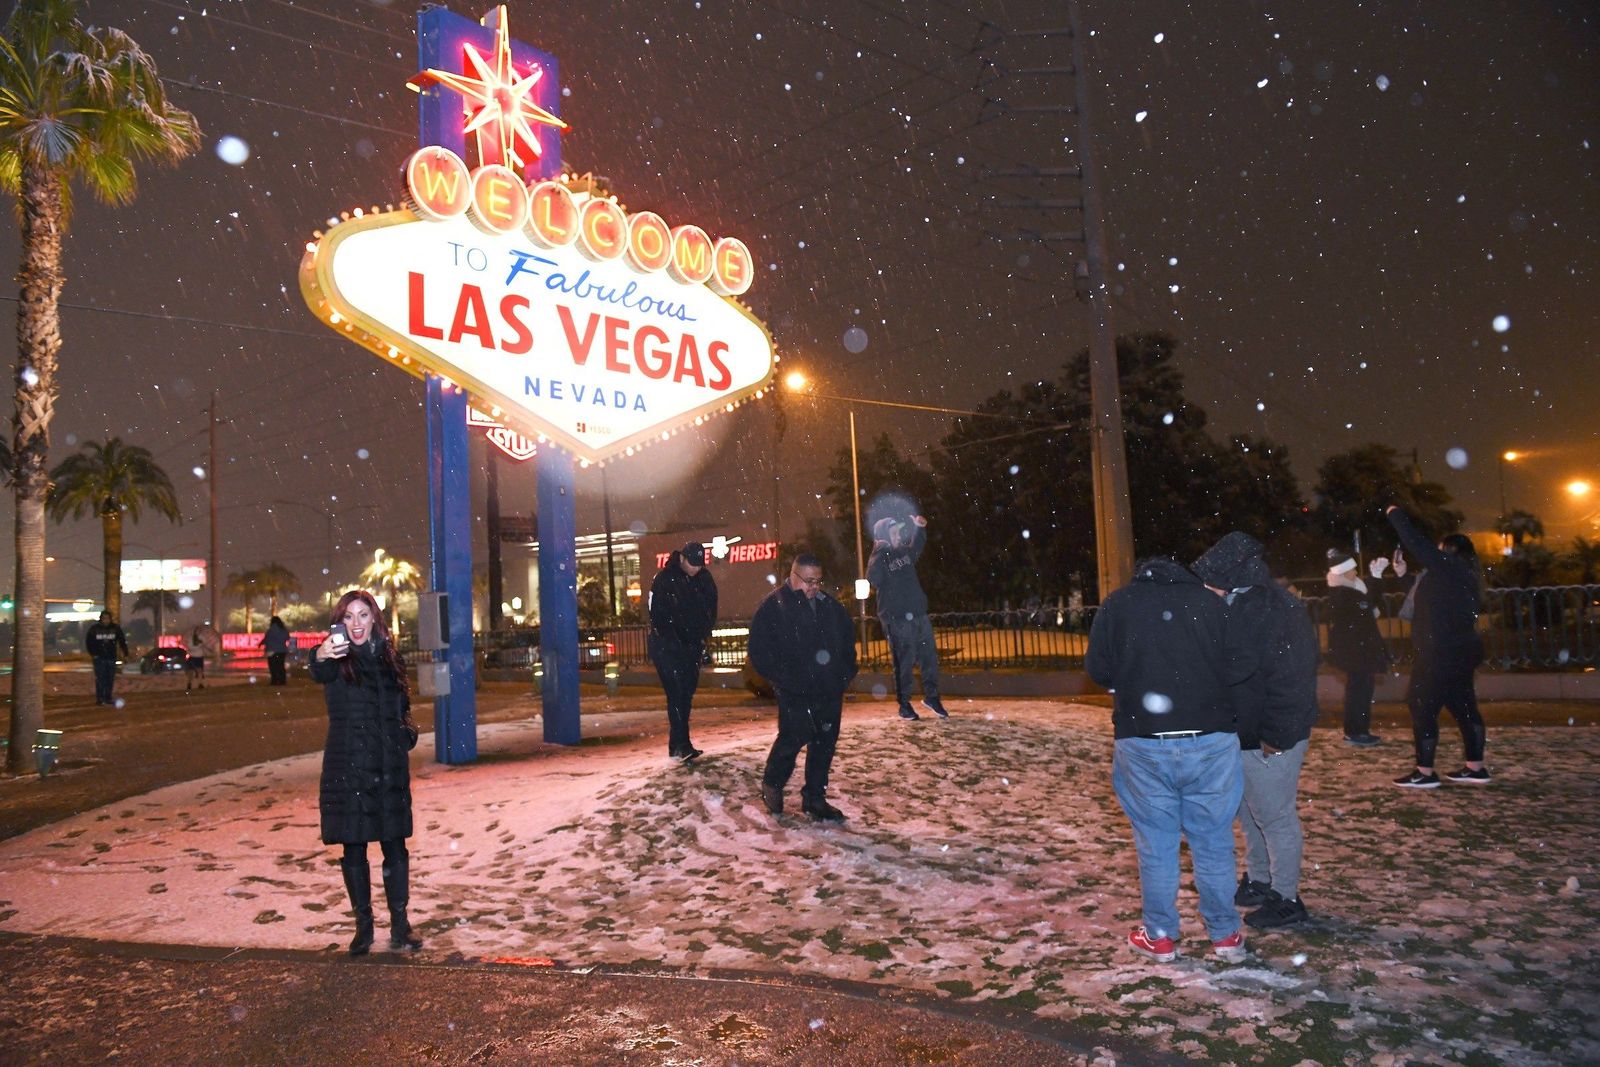 Para el recuerdo. Personas se tomaron fotos frente al letrero Welcome to Fabulous Las Vegas mientras caía la nieve. (EFE)